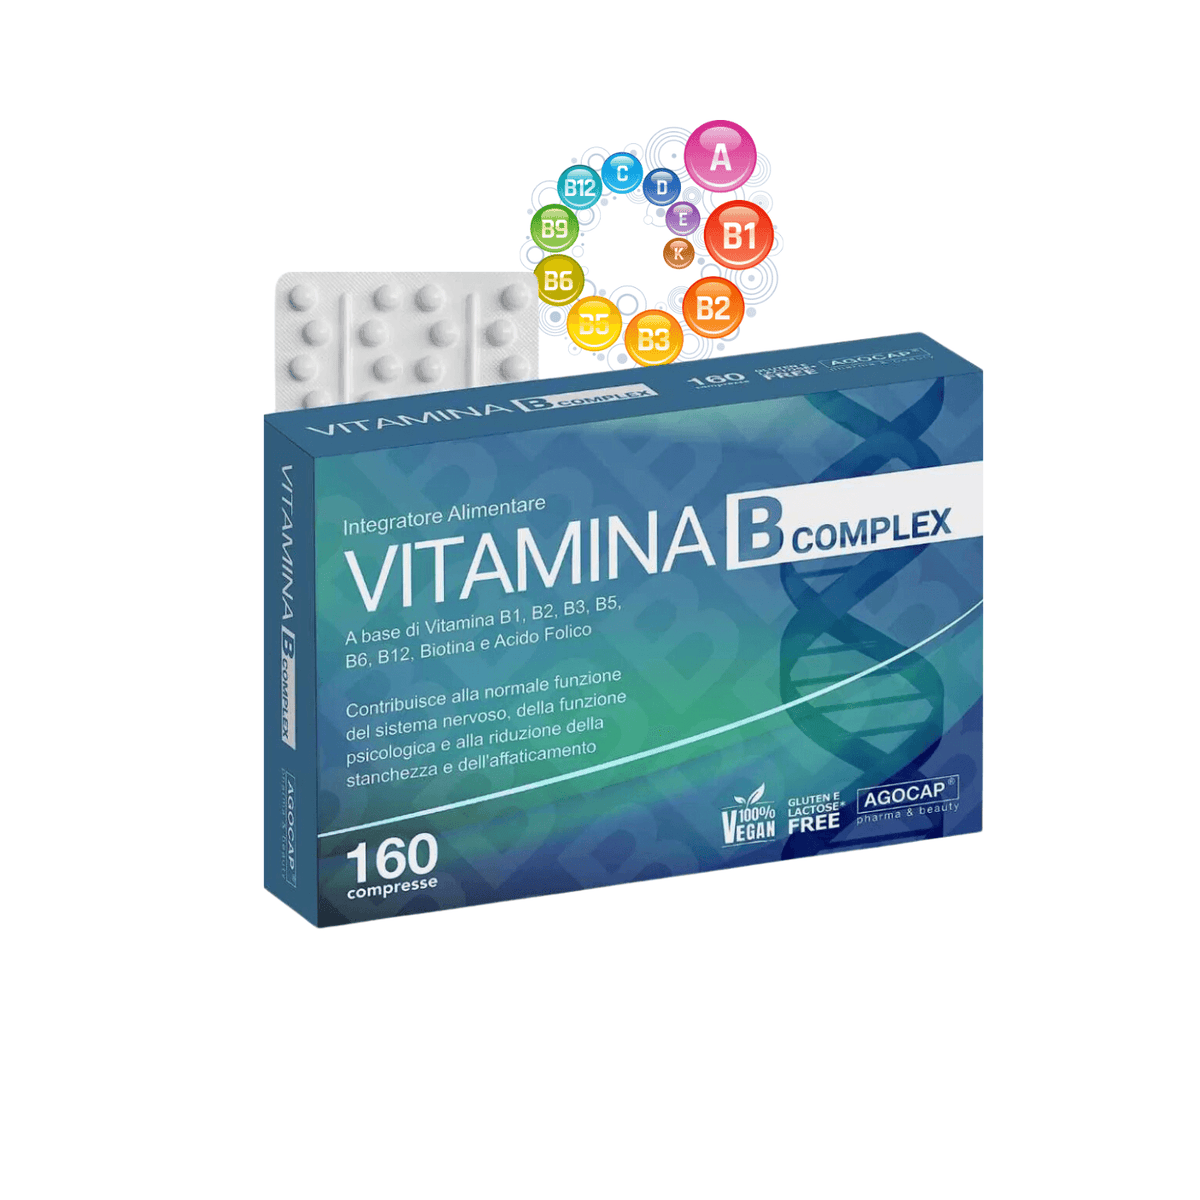 Vitamina B COMPLEX Alto Dosaggio 160 compresse - Agocap Pharma & Beauty